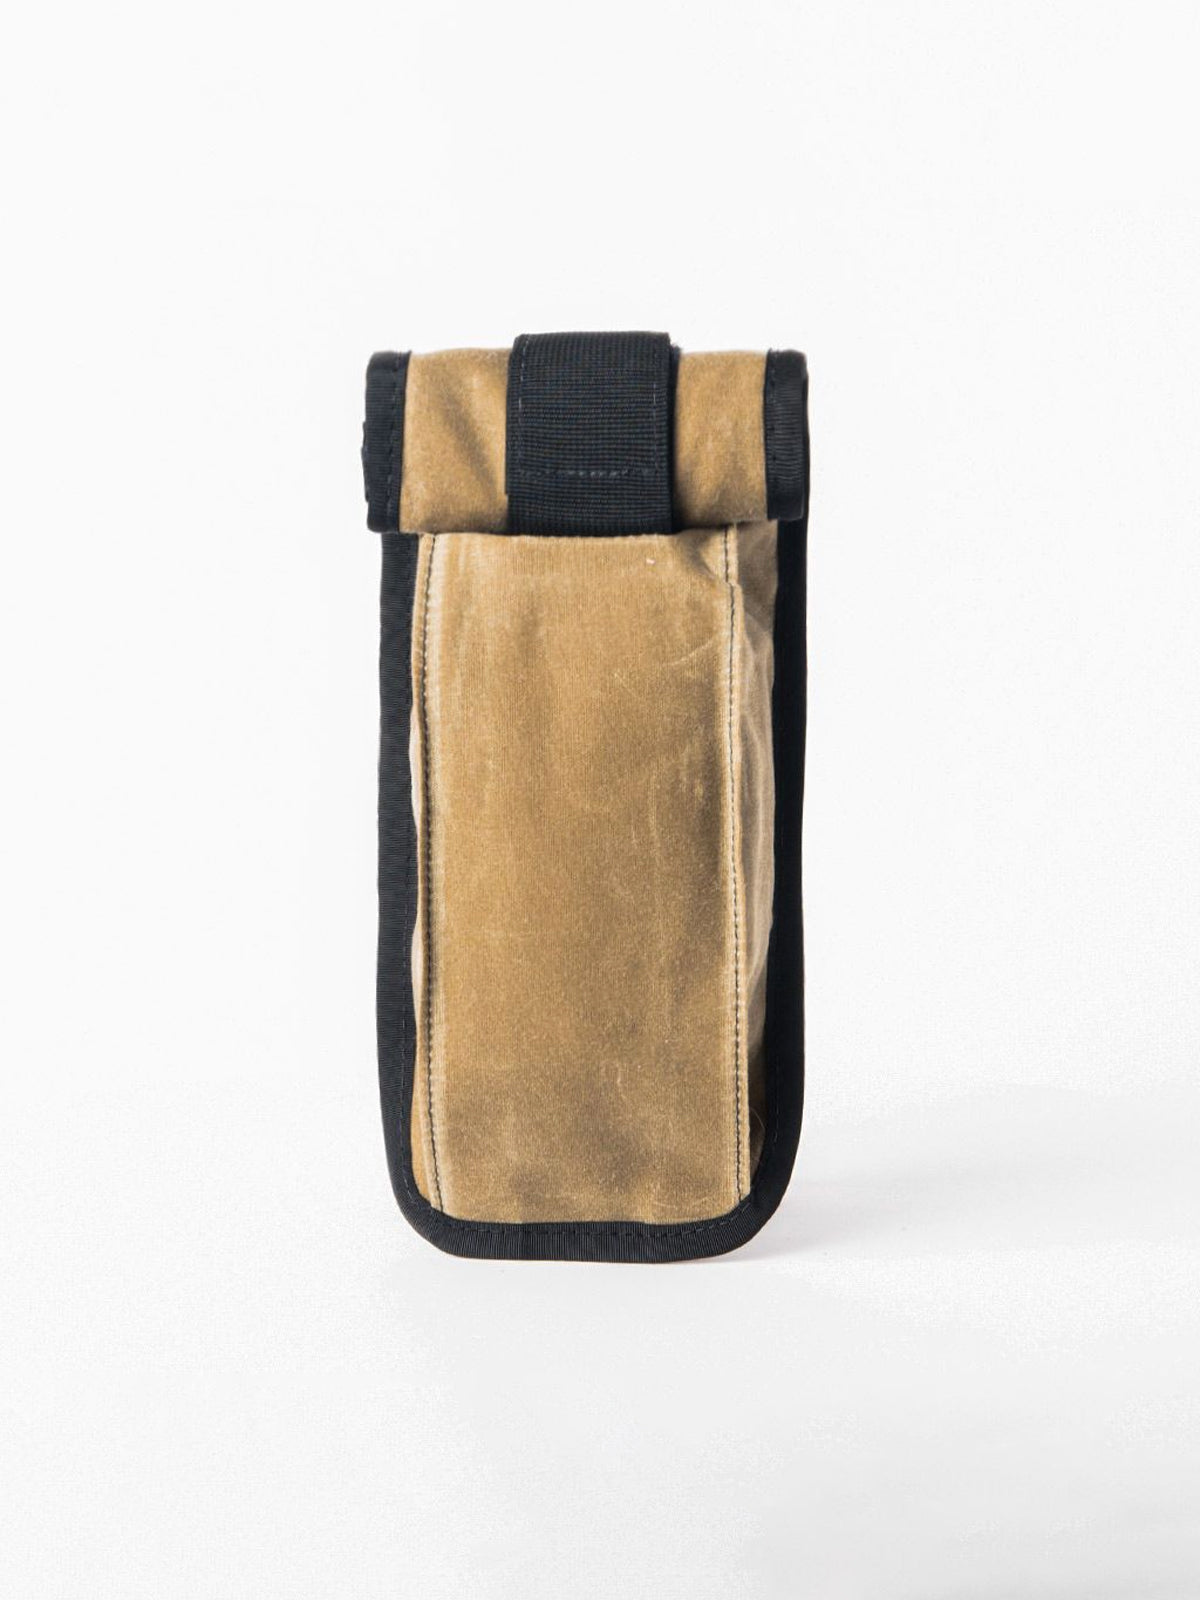 Arkiv Vertical Rolltop Pocket by Mission Workshop - Säänkestävät laukut ja tekniset vaatteet - San Francisco & Los Angeles - Rakennettu kestämään - ikuinen takuu